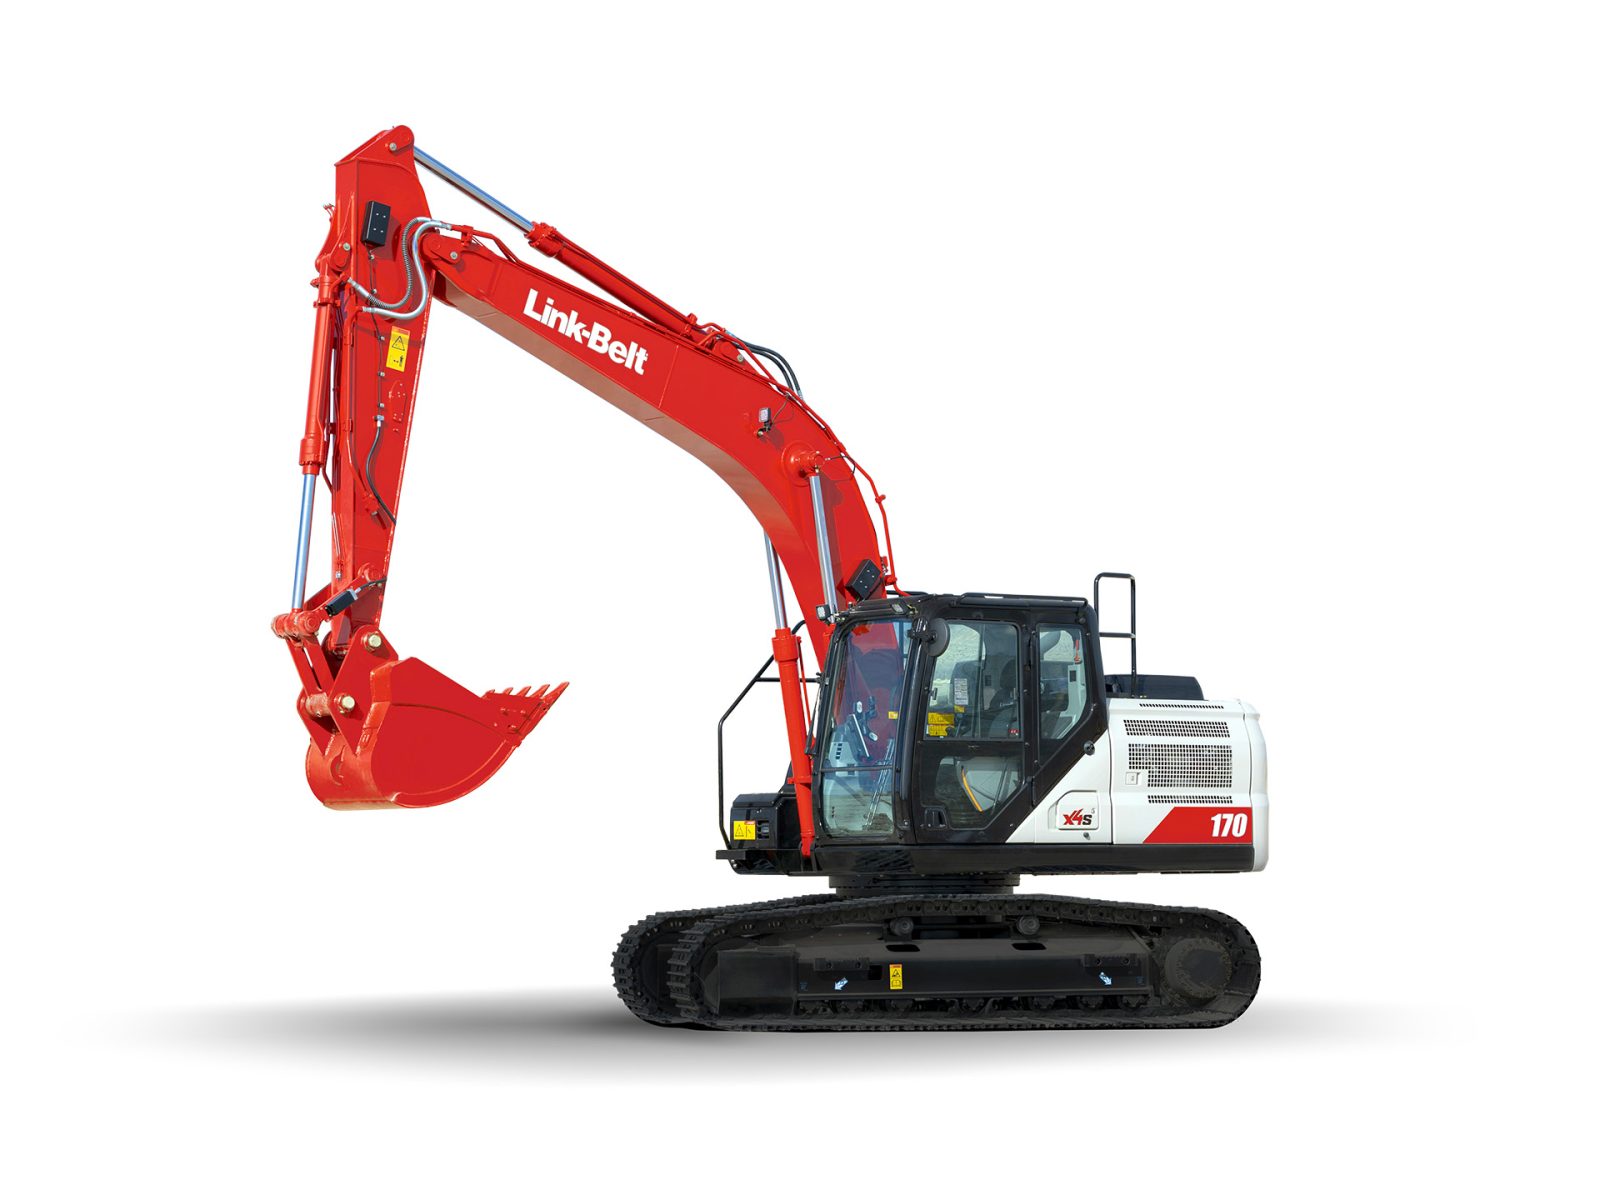 Link-Belt excavator 170X4S | Product Link-Belt excavator 170X4S